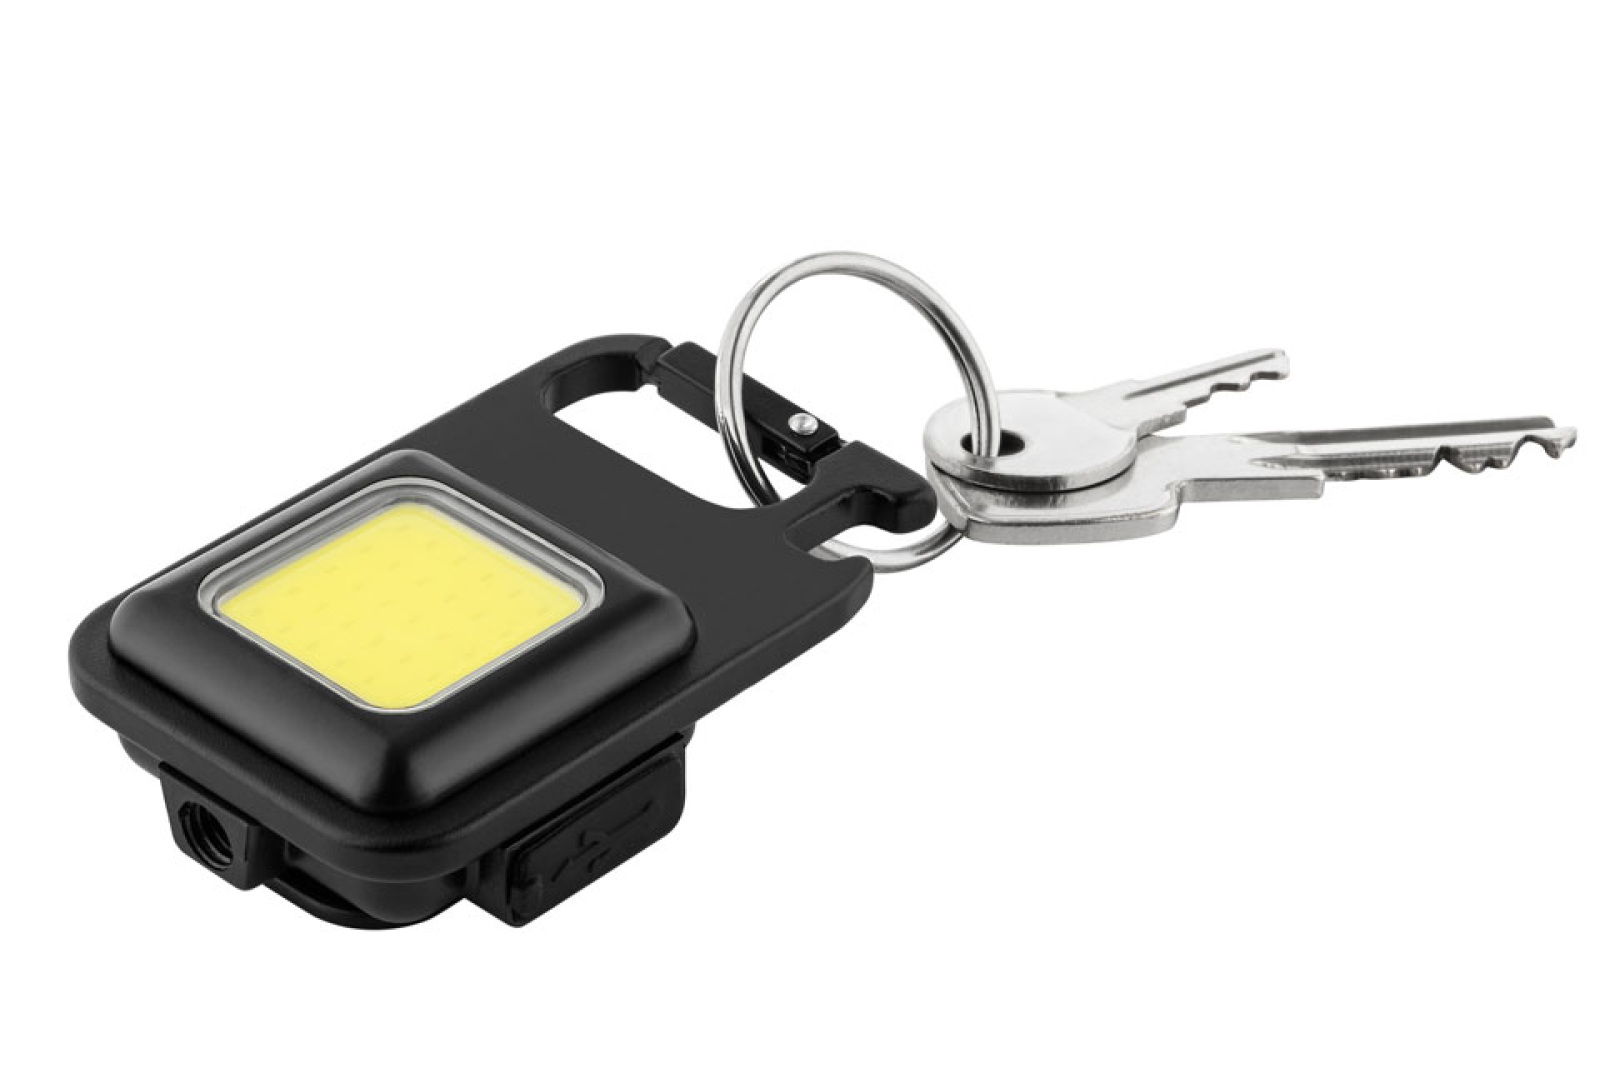 Mini Taschenlampe als Werbeartikel befestigt am Schlüsselanhänger. 